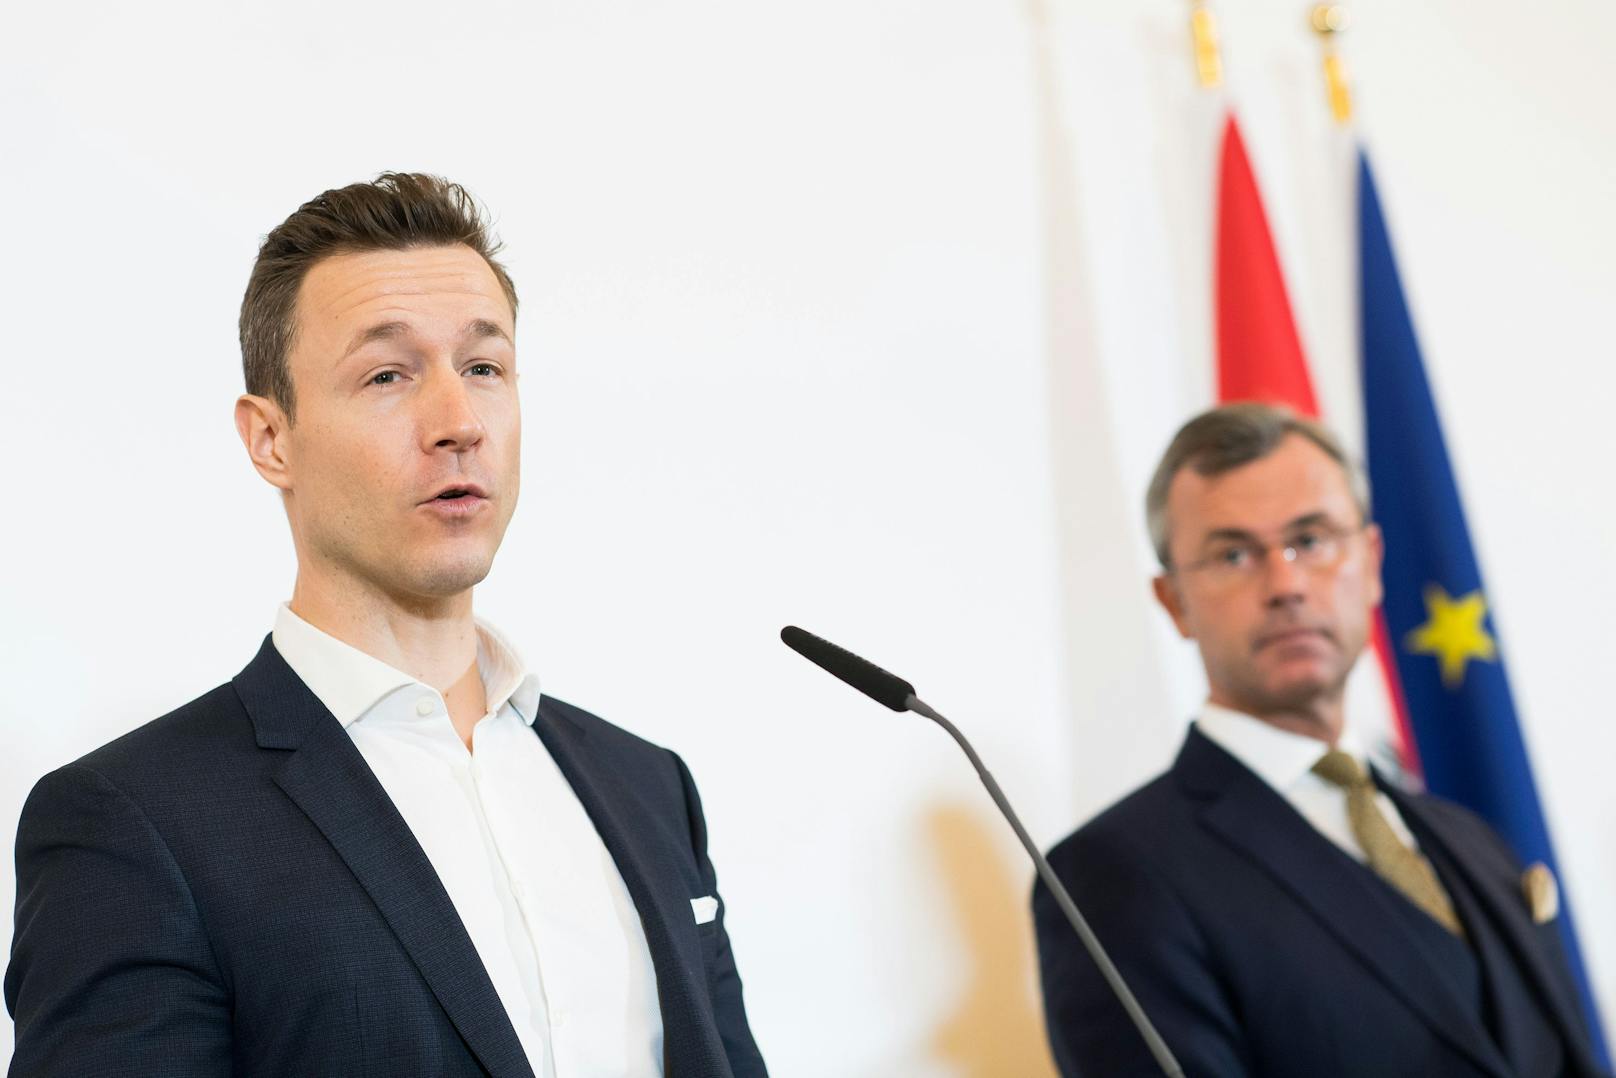 FPÖ stellt Misstrauensantrag gegen Blümel